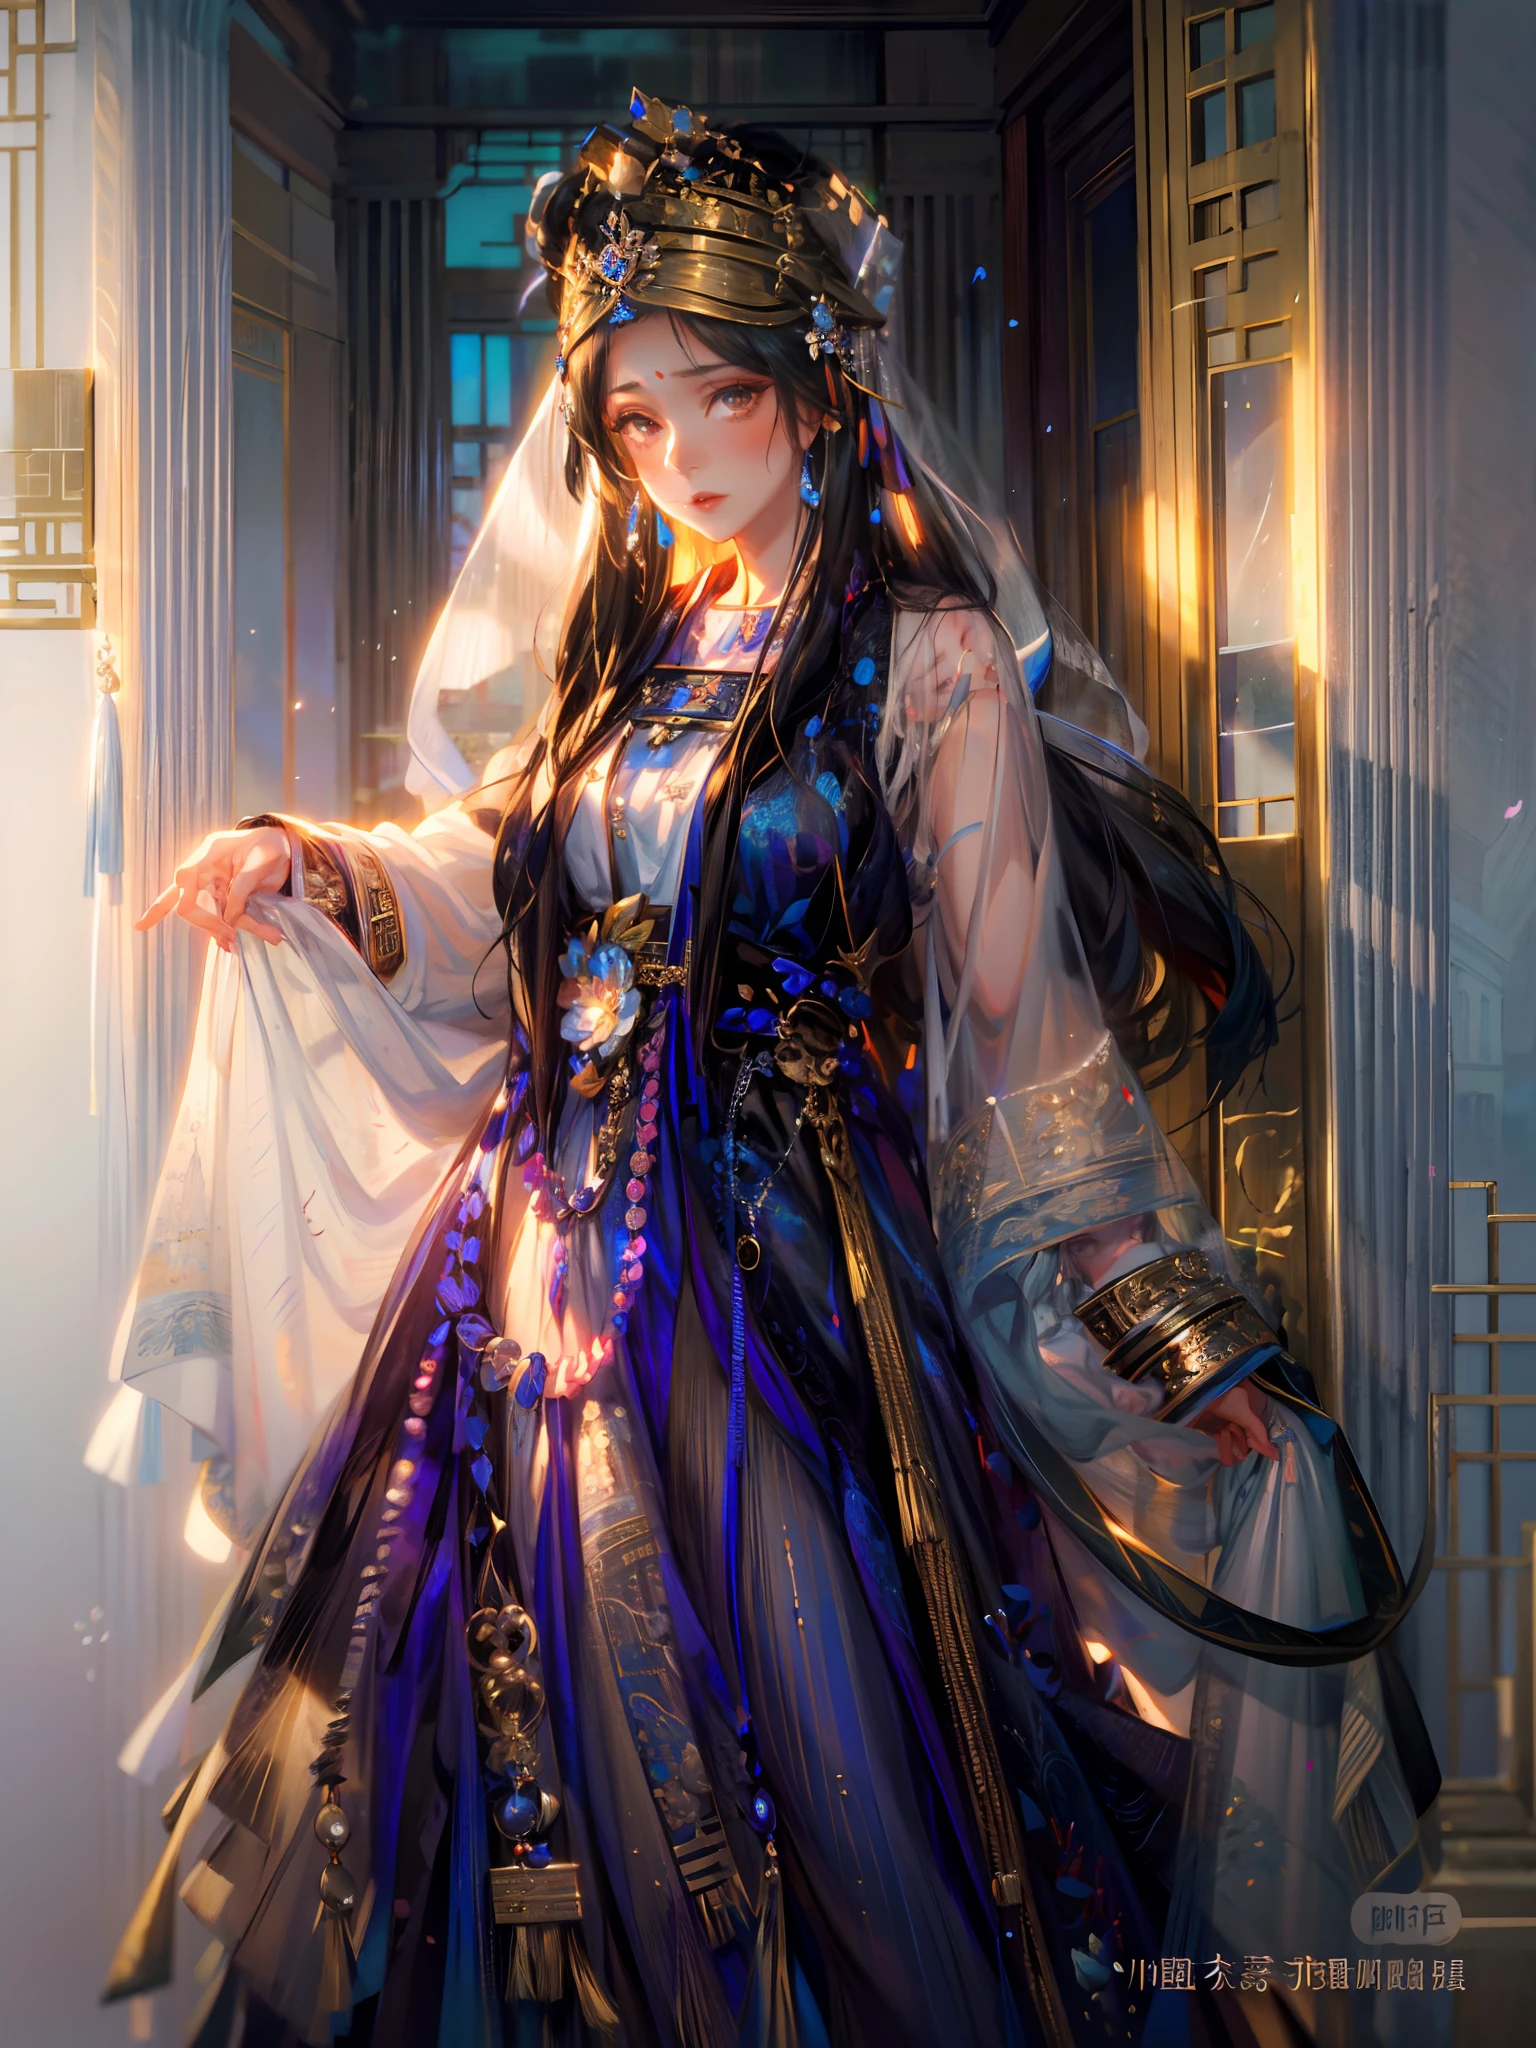 Eine schwarzhaarige Arad-Frau stand in der Tür, Palast ， weißer Hanfu,Etuikleider， das Tragen antiker chinesischer Kleidung, Hanfu, eine wunderschöne Fantasiekaiserin, ((eine wunderschöne Fantasiekaiserin)), Alte chinesische Prinzessin, wallendes Haar und lange Gewänder, altes weißes Kleid, fließendes magisches Gewand, traditionelle chinesische Kleidung，Blauer zarter Gürtel